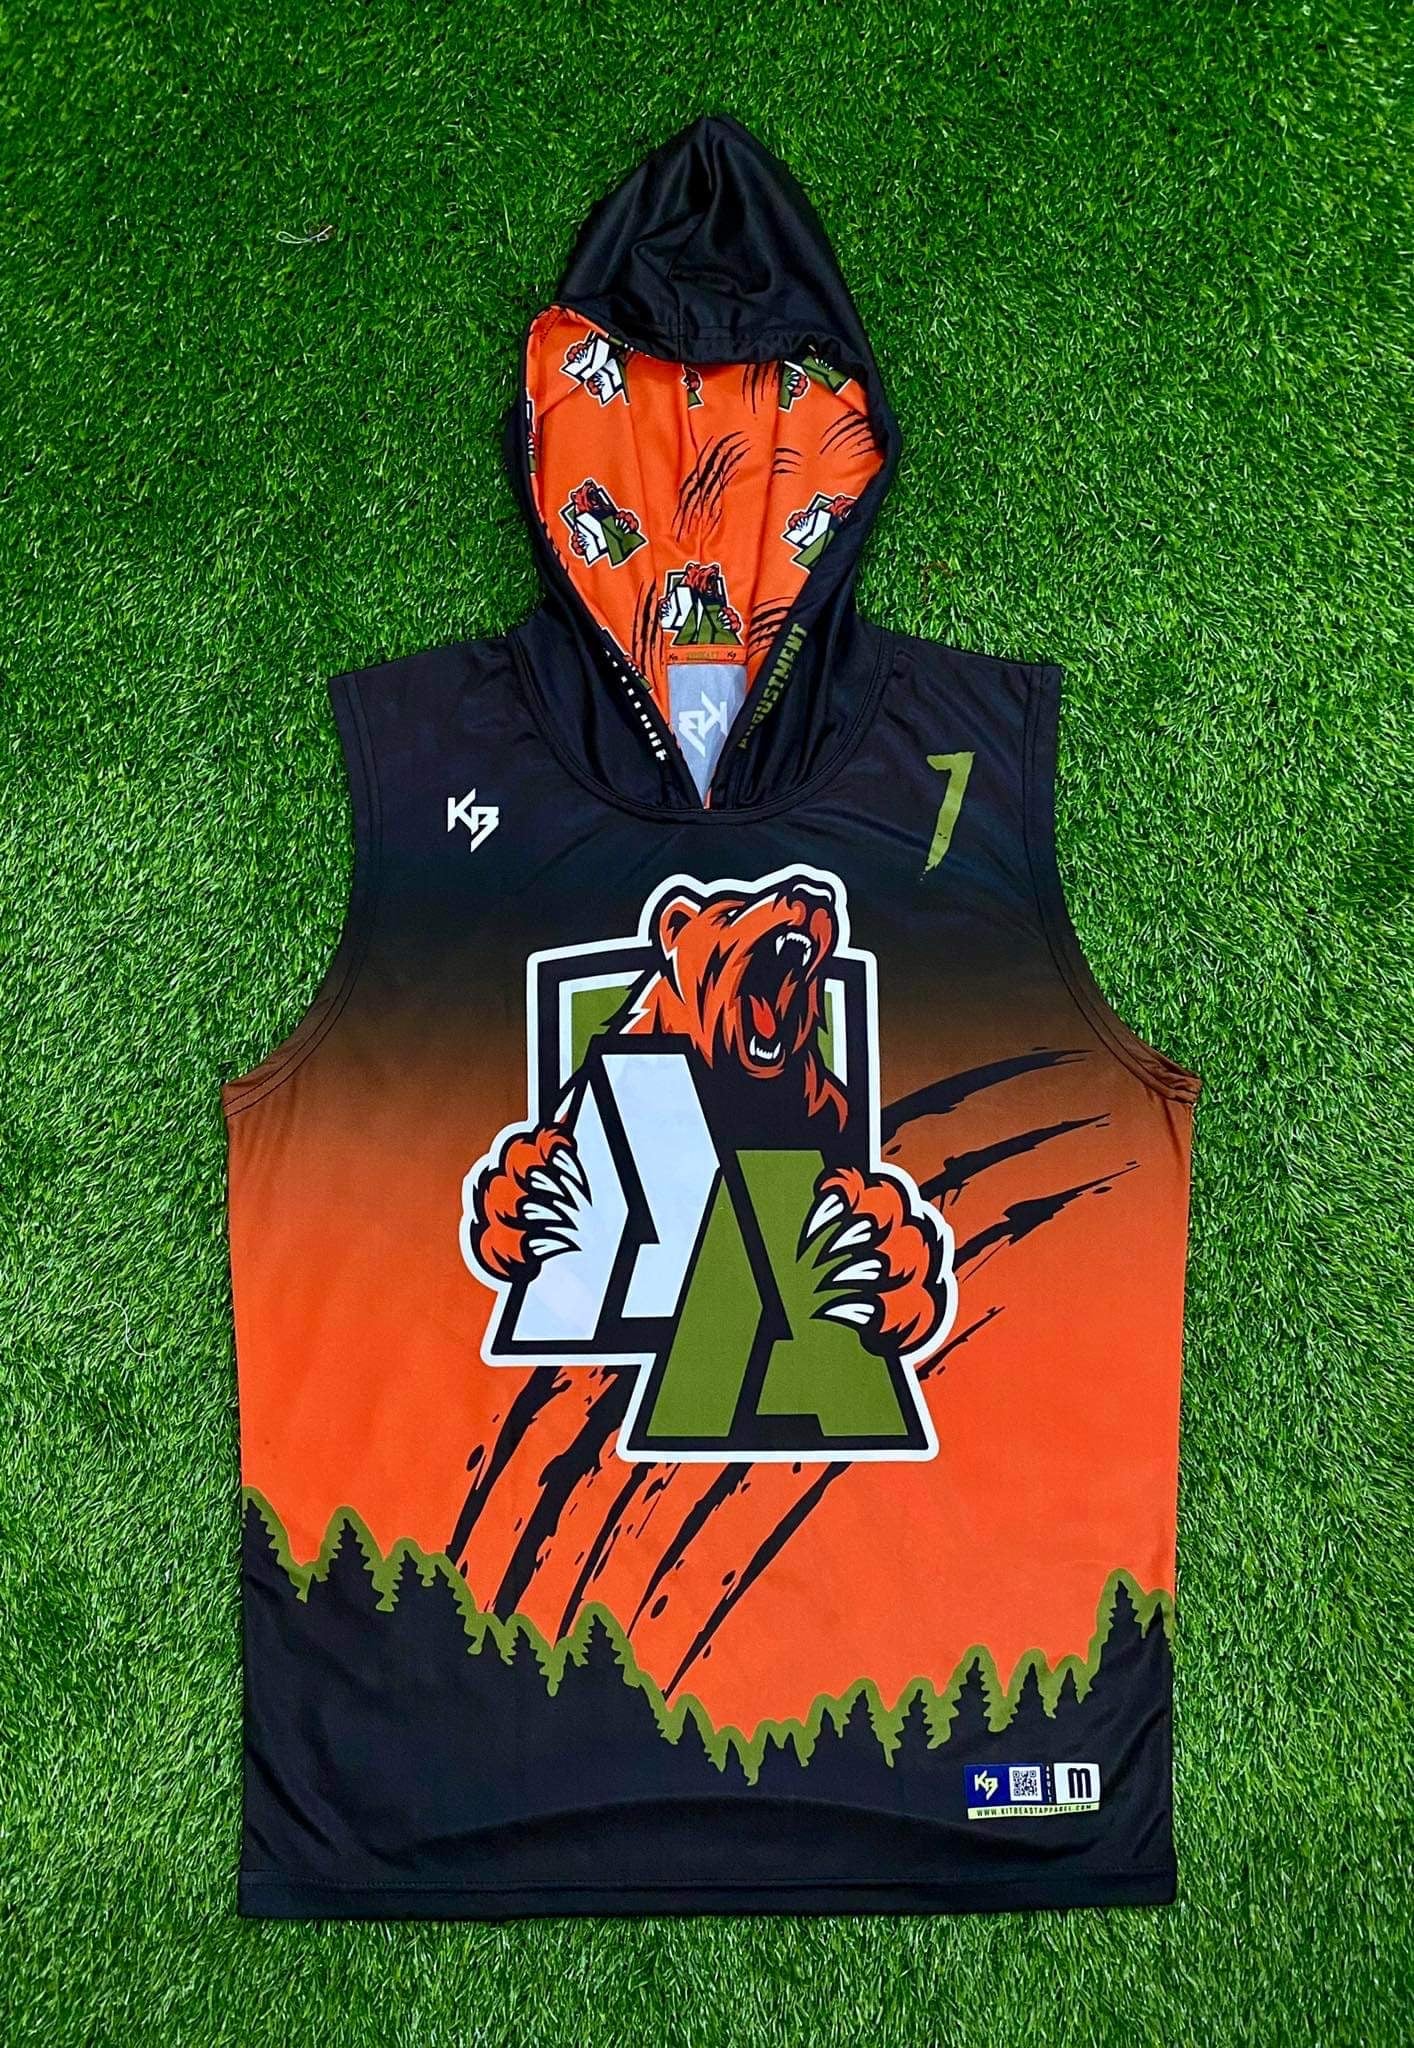 Tigers Dri-Fit 7v7 Jersey – KitBeast Sports Apparel